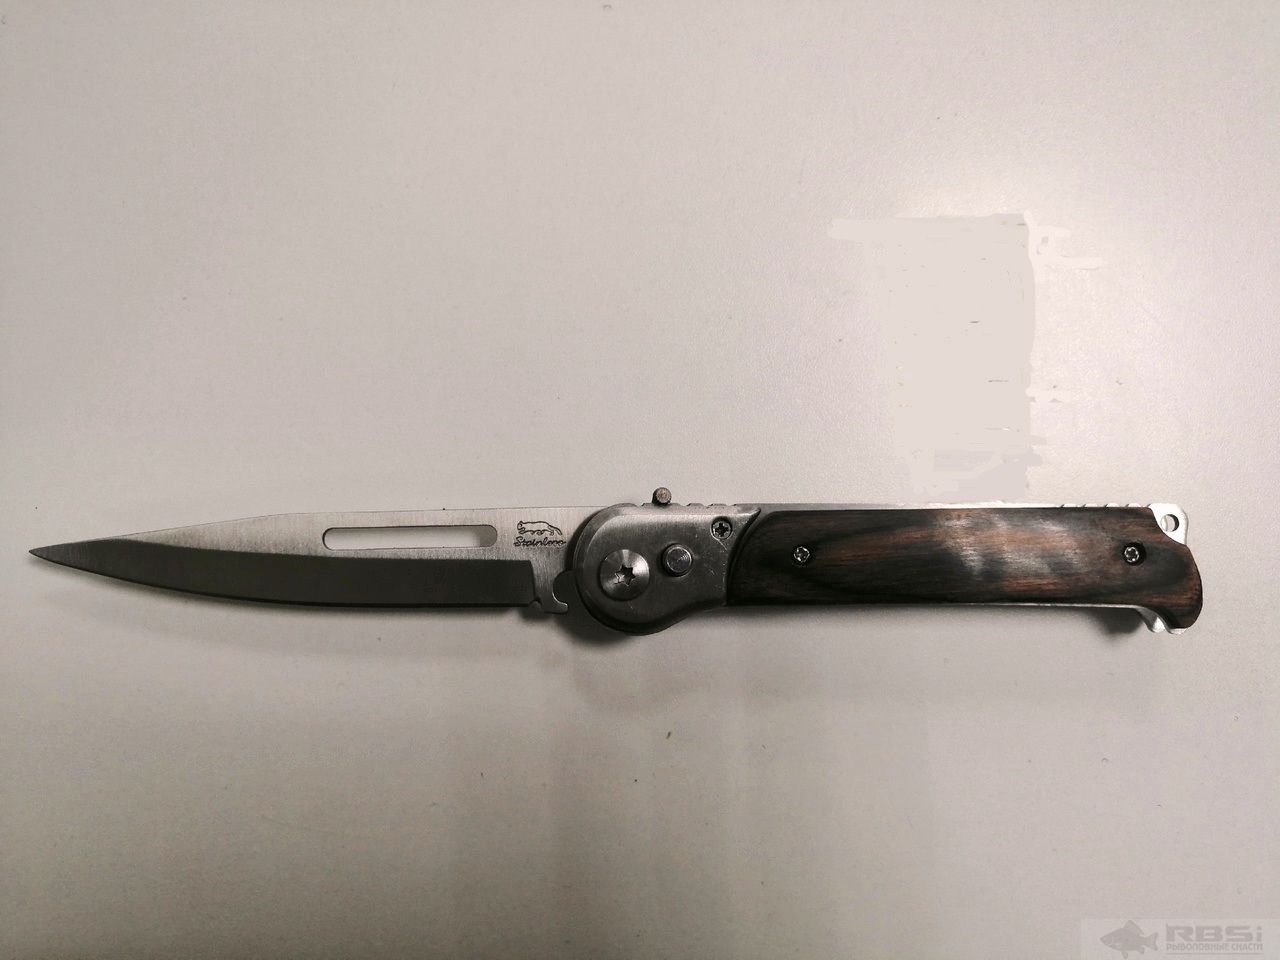 Нож Stainless выкидной в чехле, длина - 22 см, ручка - 12 см, ручка дерево, с фиксатором (513А)